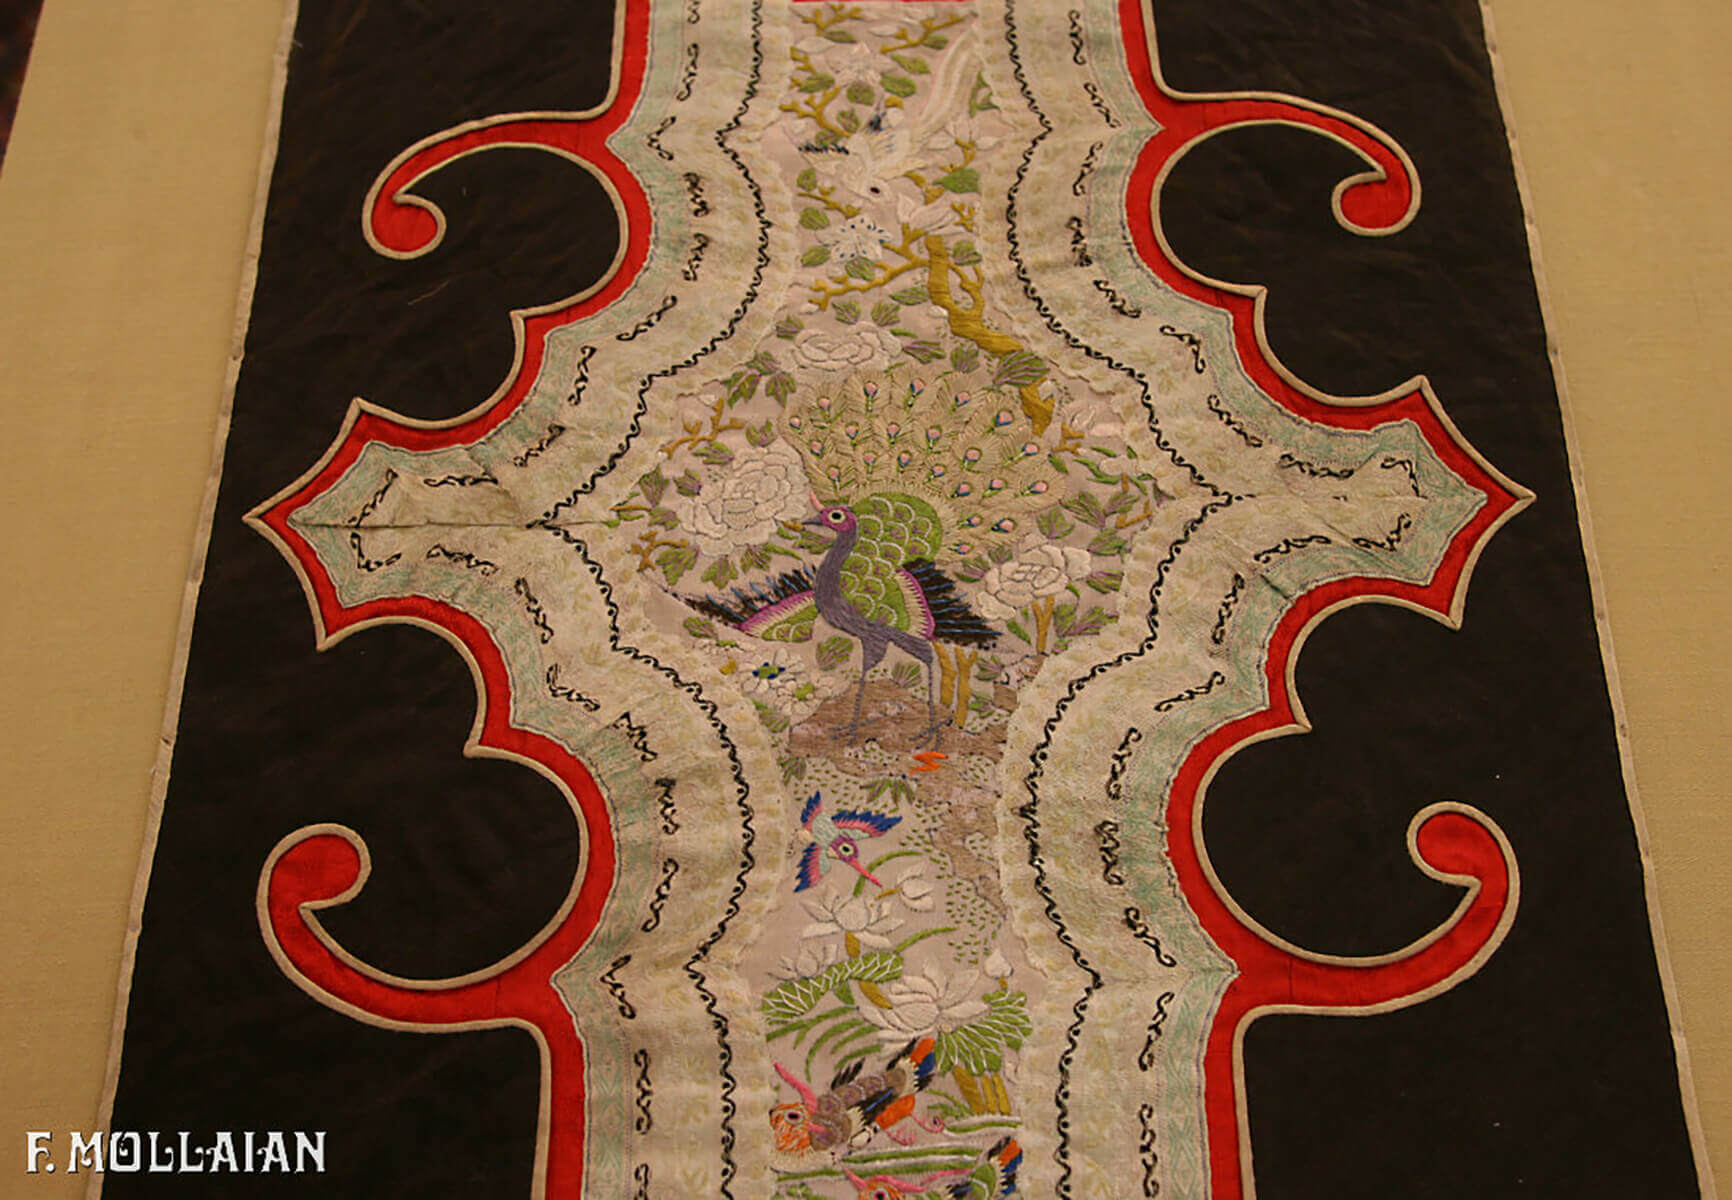 Textil Chinesischer Antiker Seide n°:29084486